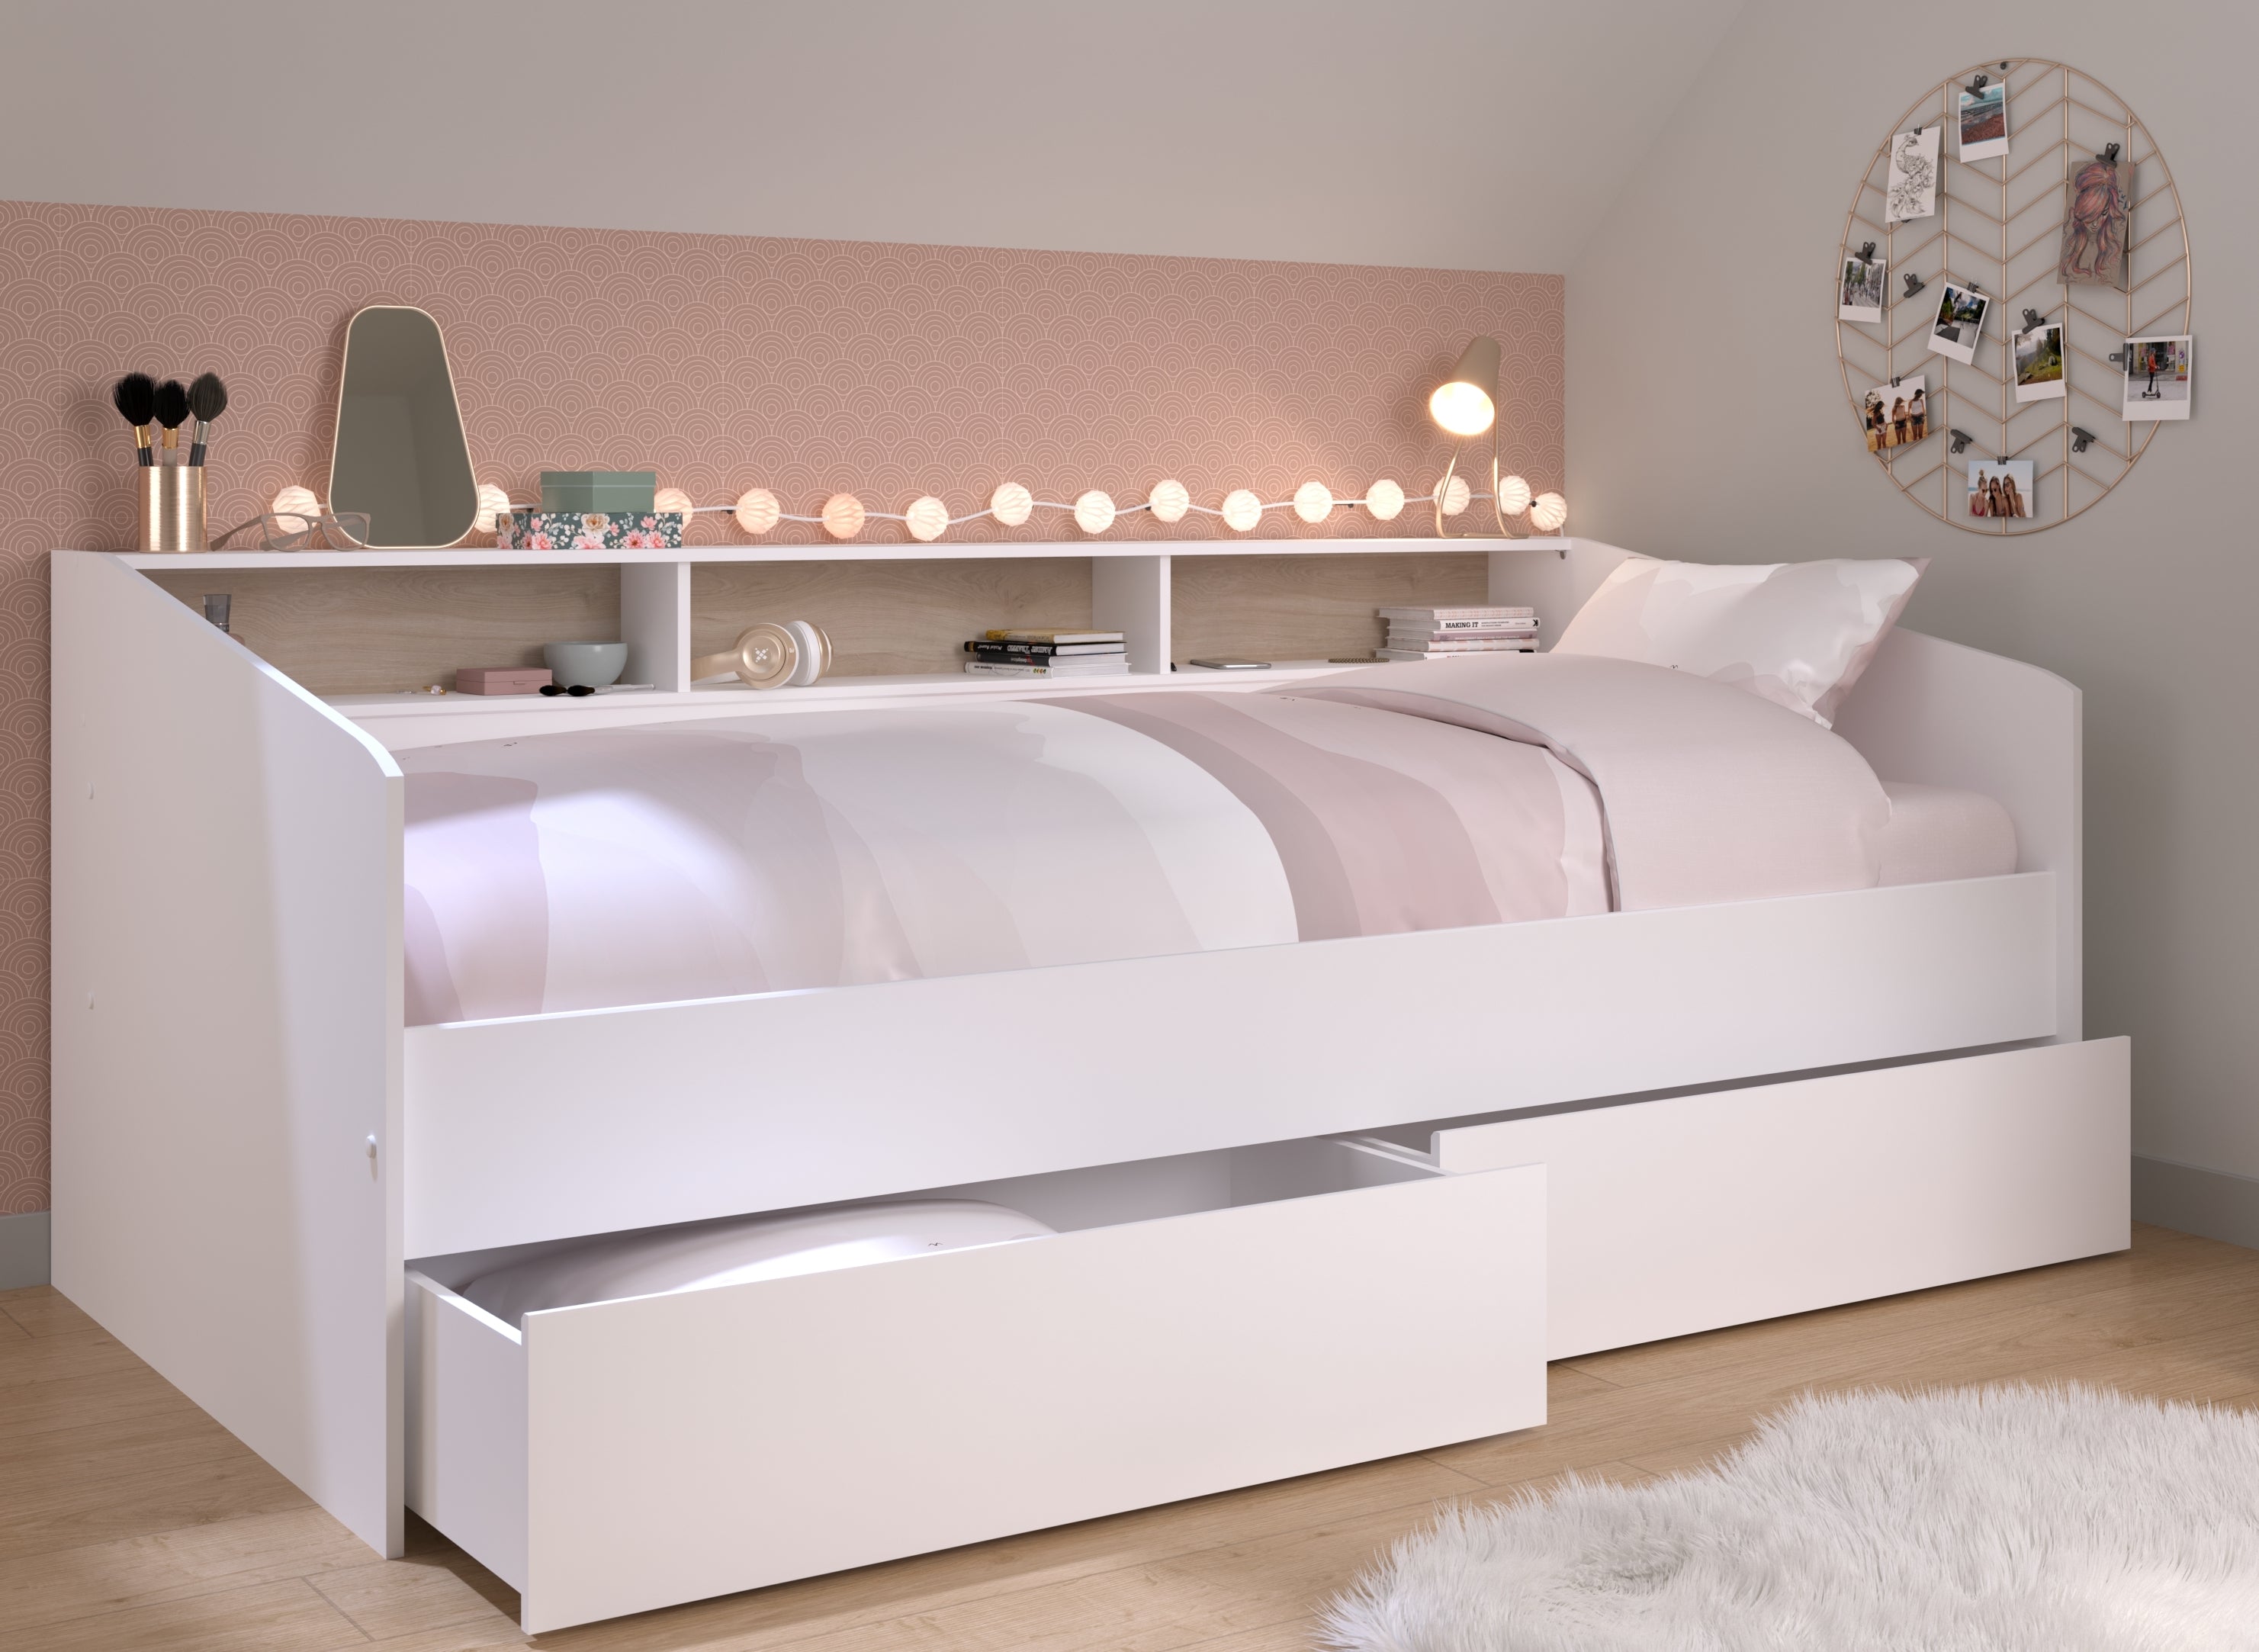 Funktionsbett Sleep 4 Parisot inkl. 2 Bettschubkästen Regal Jugendbett Bettliege Bett weiß 90*200 cm